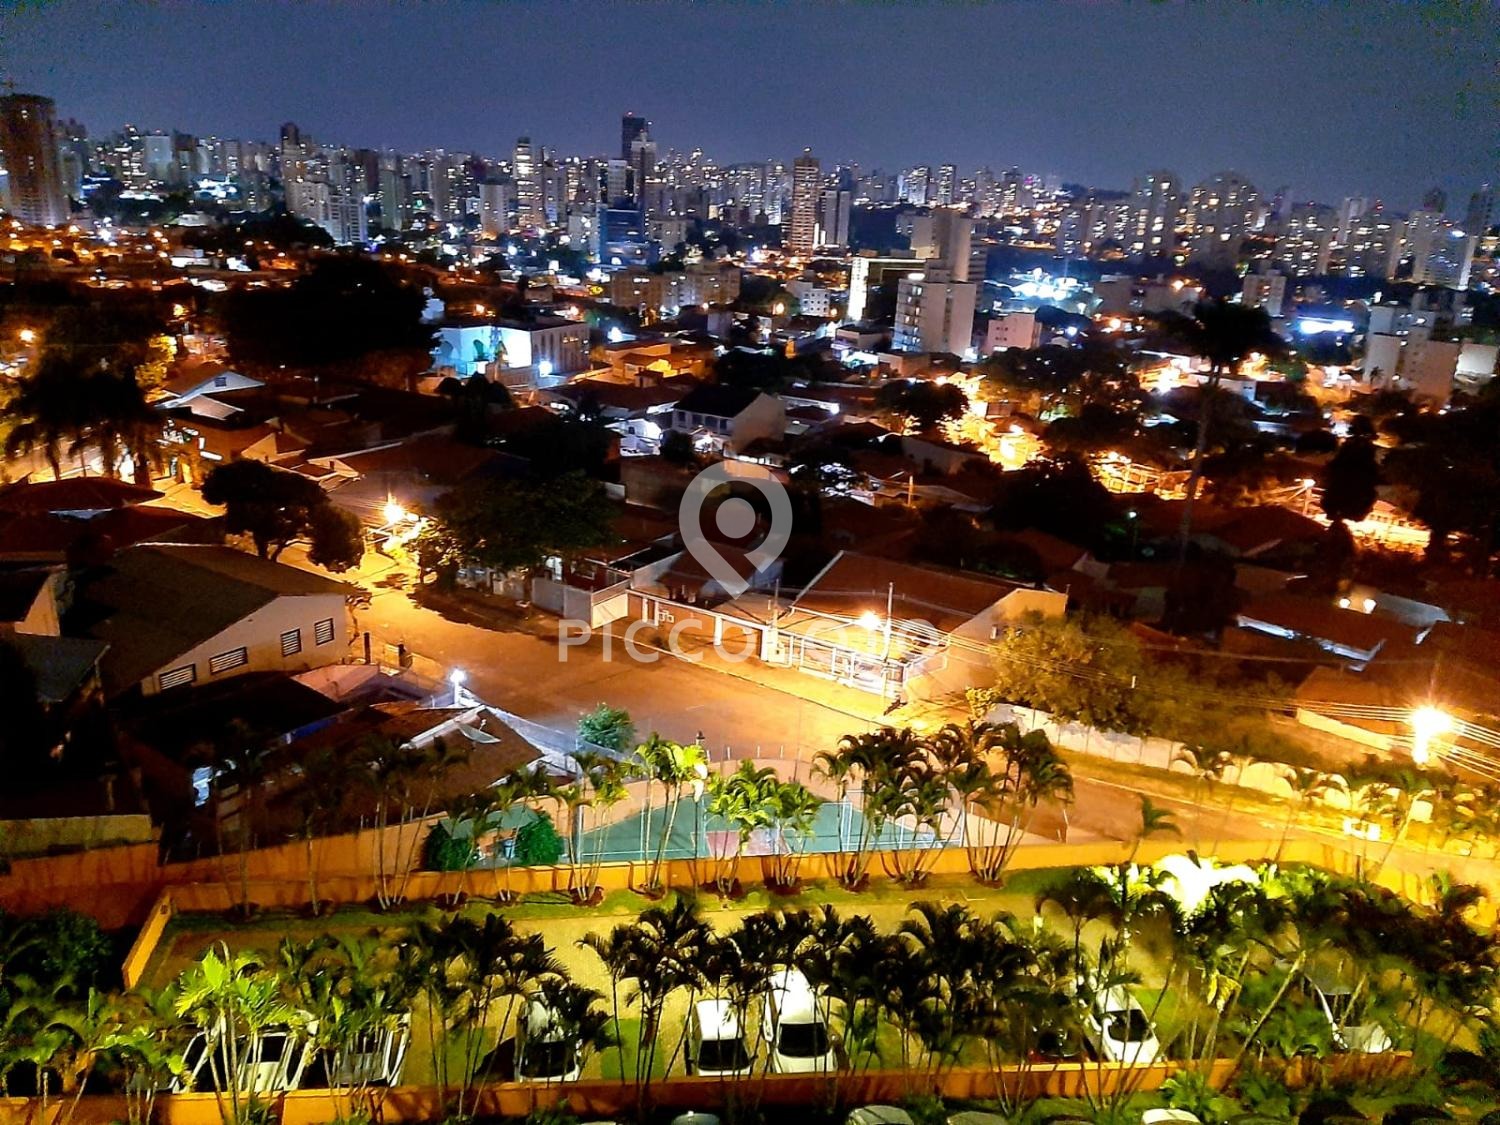 Piccoloto - Apartamento à venda no Chácara da Barra em Campinas